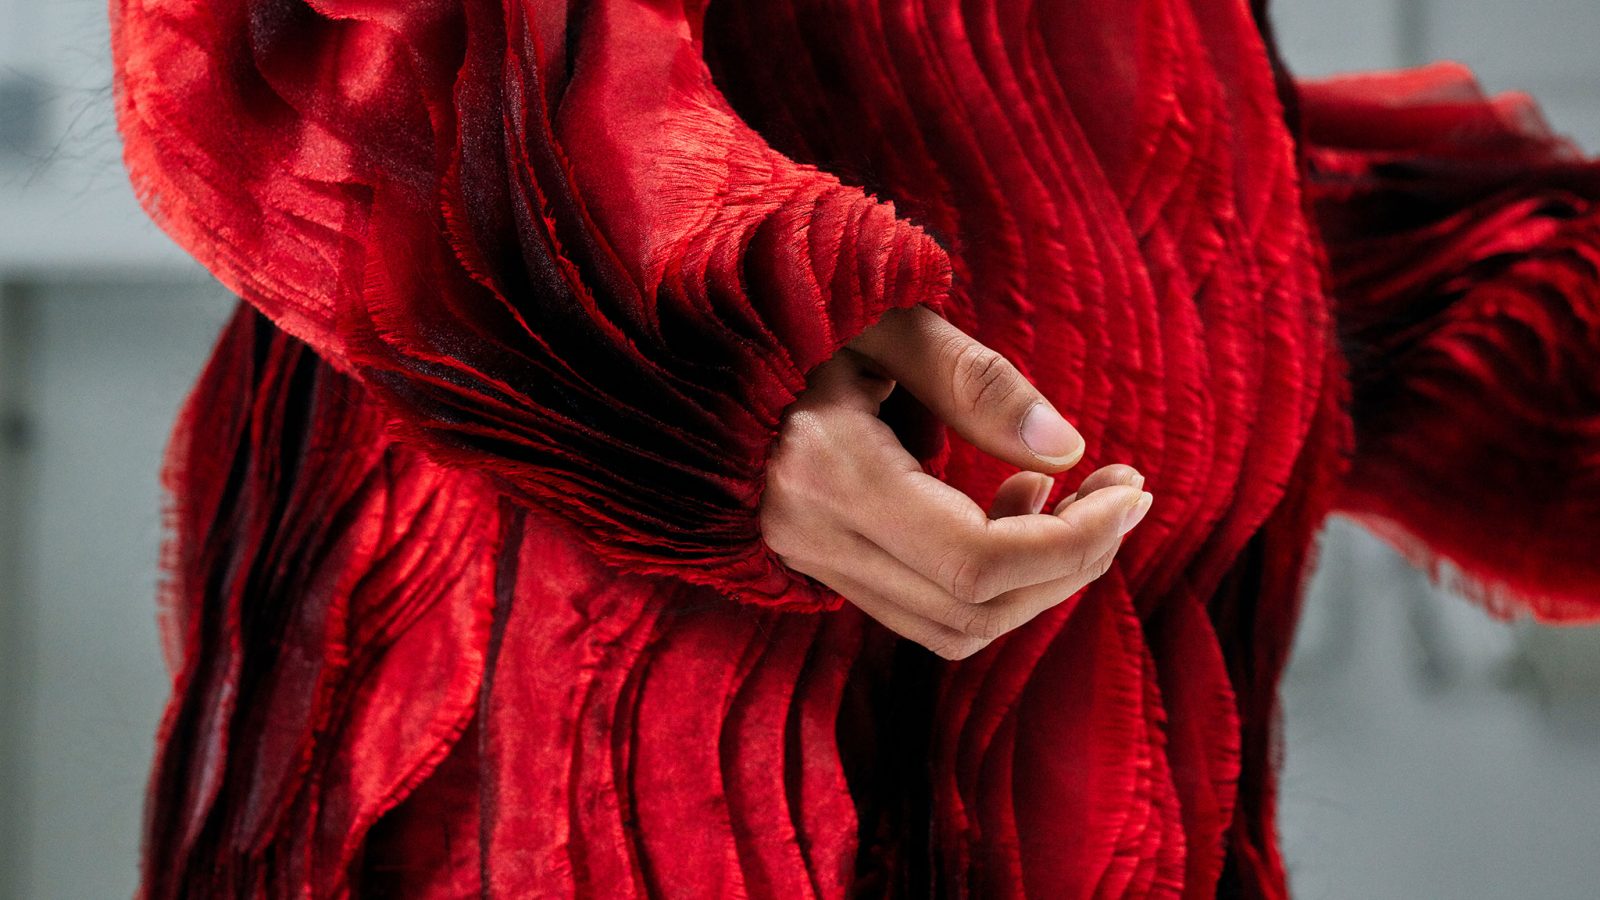 Ein rotes Kleidungsstück mit langen Ärmeln und mehreren senkrecht fallenden Lagen mit gewellter Textur, Schatten und eine Frauenhand.